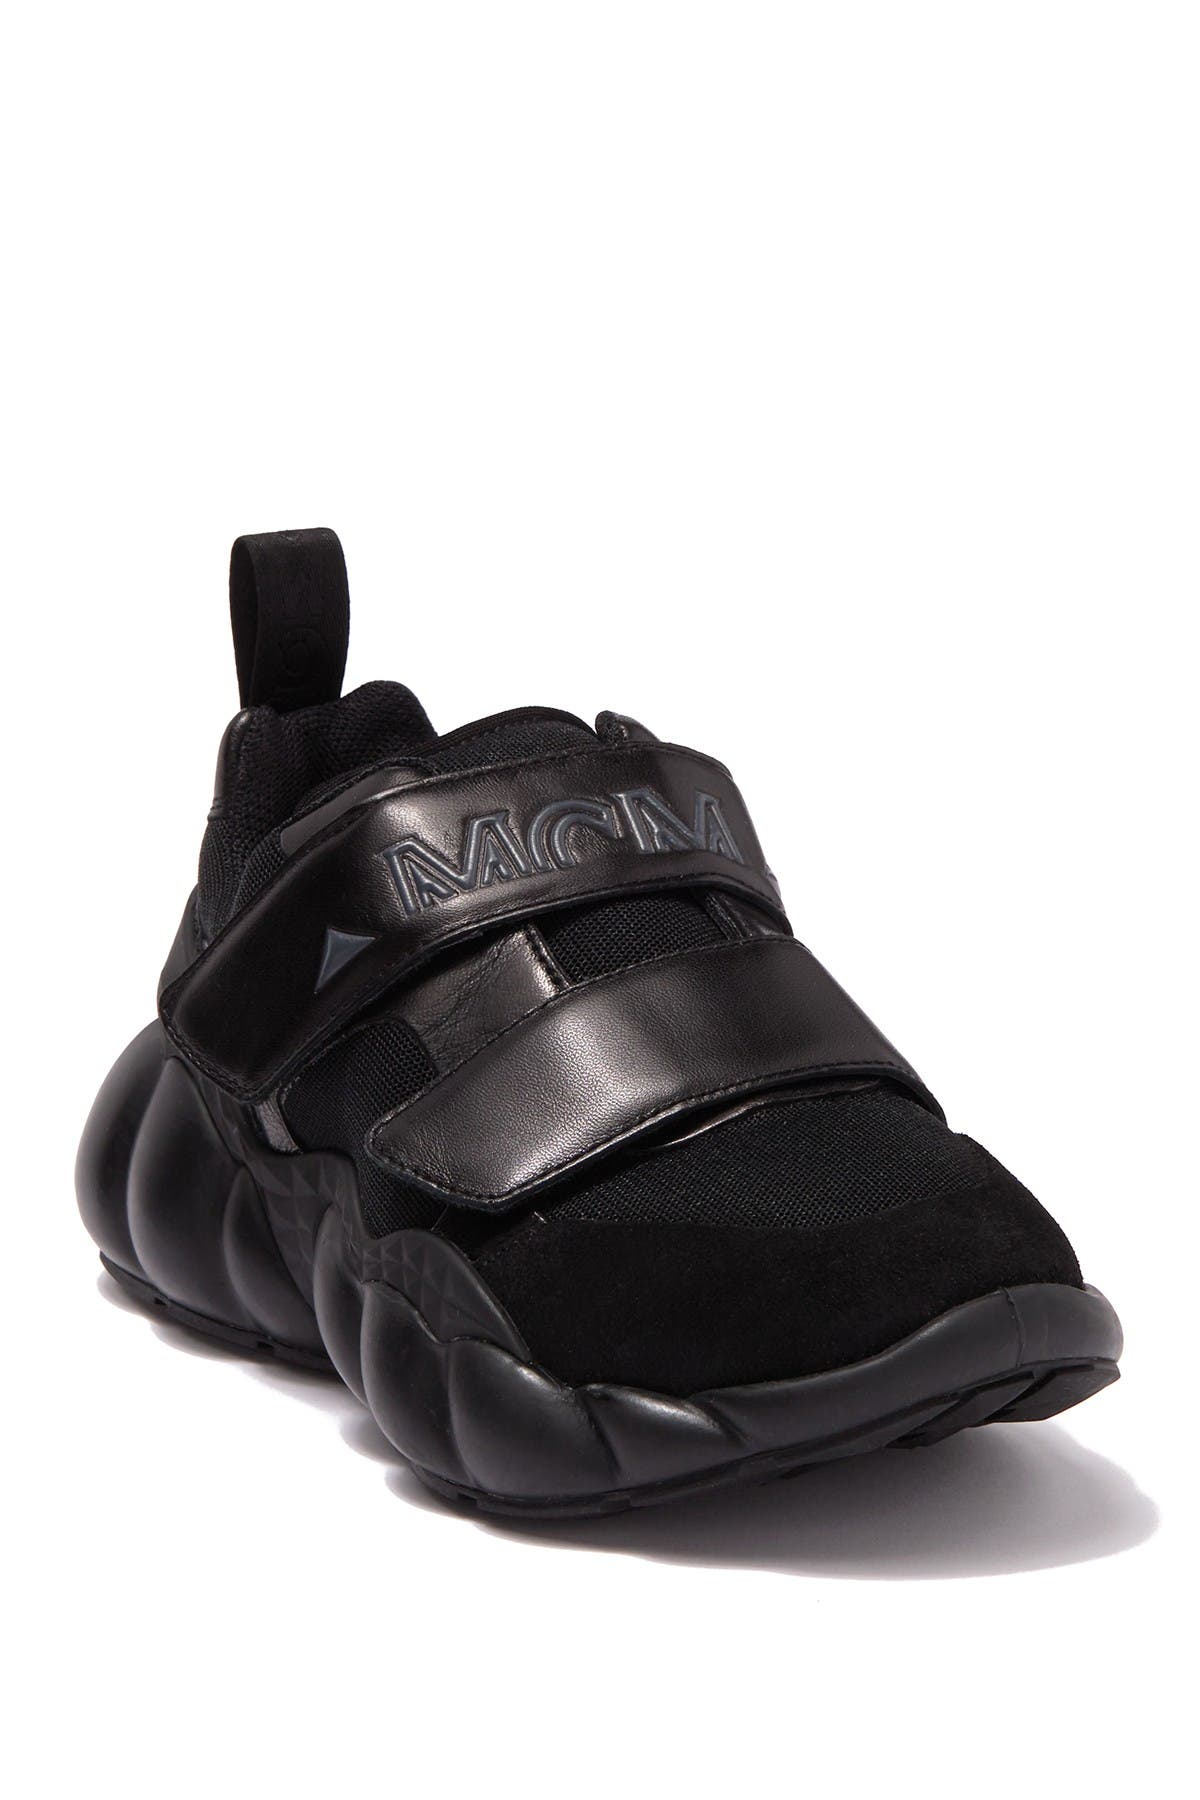 black mcm sneakers